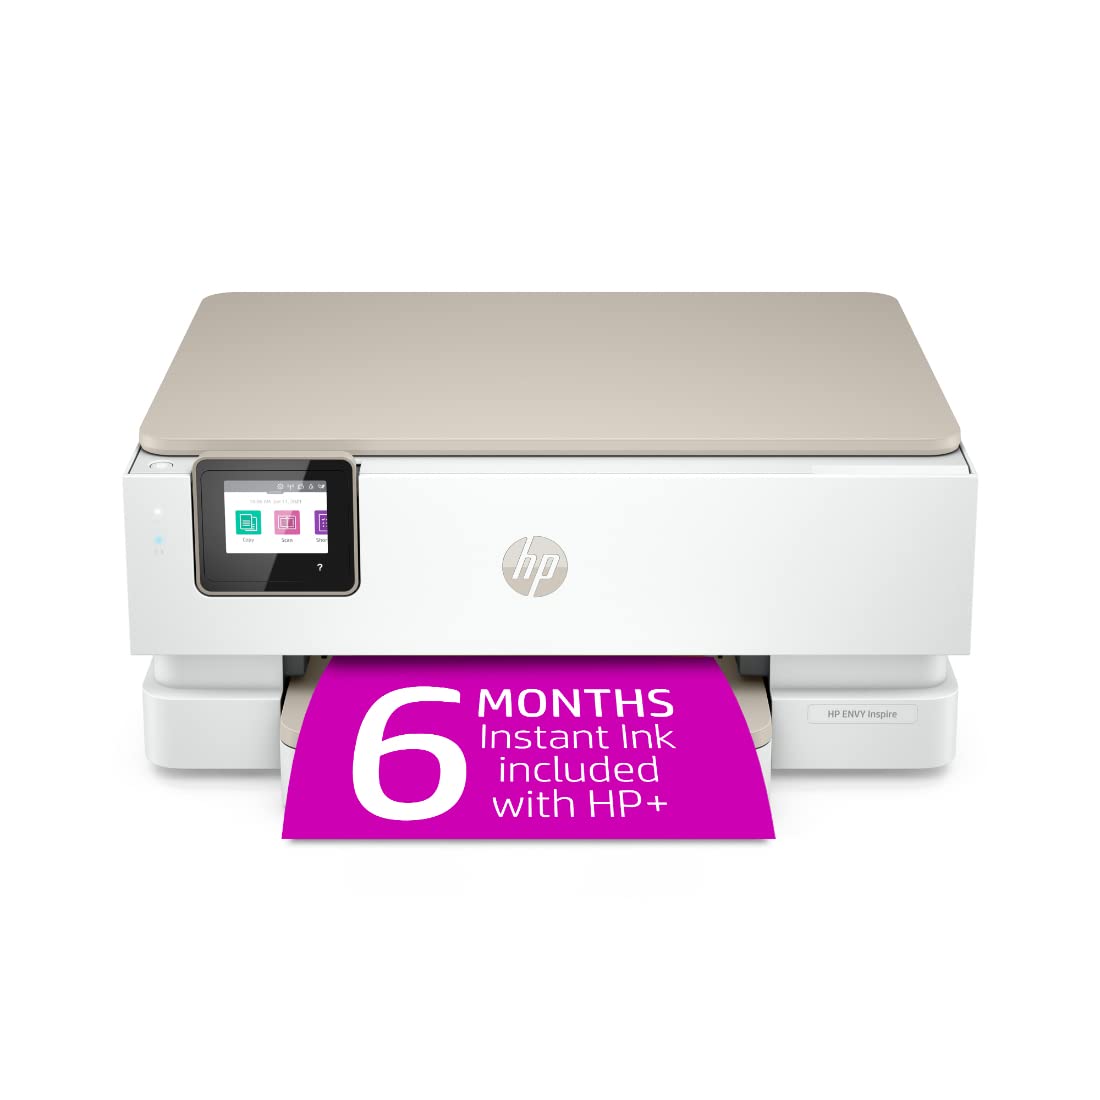 HP Envy Inspire 7255e Impresora Todo-en-Uno Color Inalámbrica